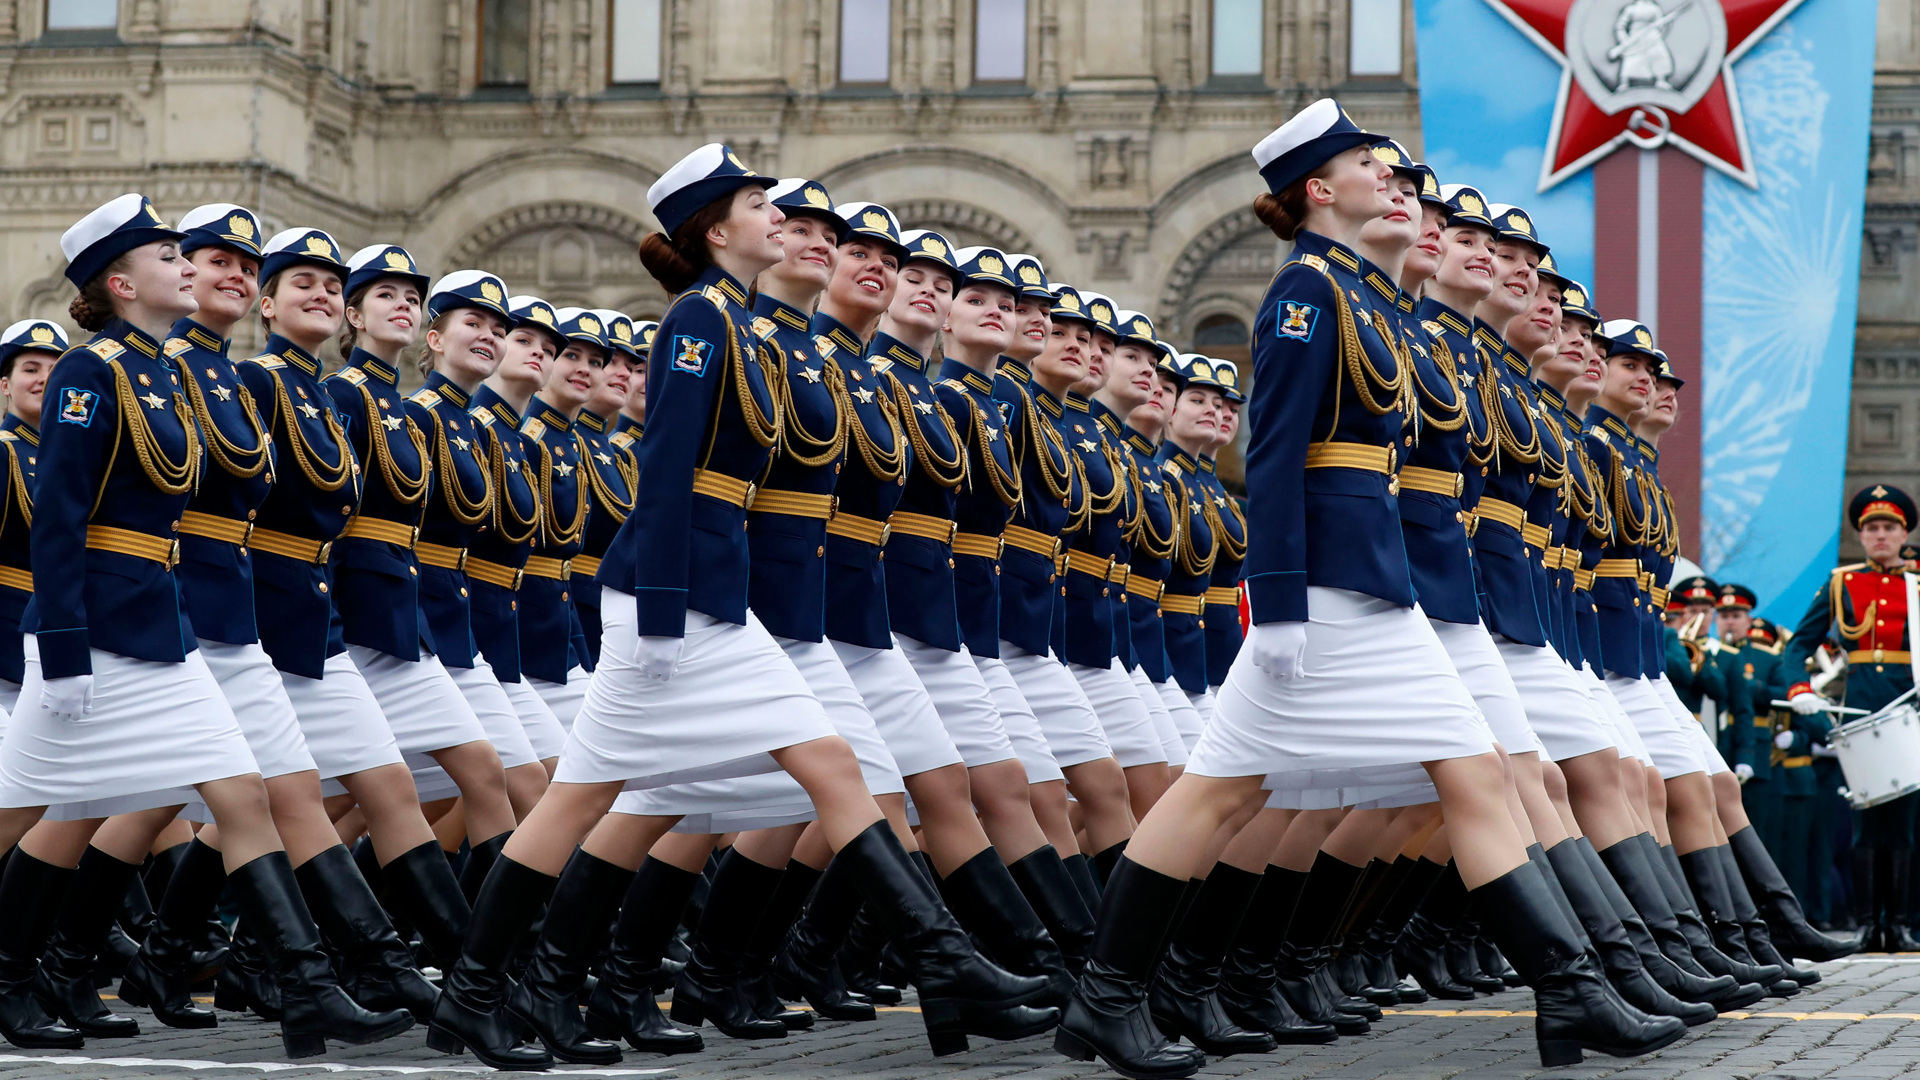 9 мая 2017 г. Курсантки на параде в Москве. Девушки на параде. Женский полк на параде.